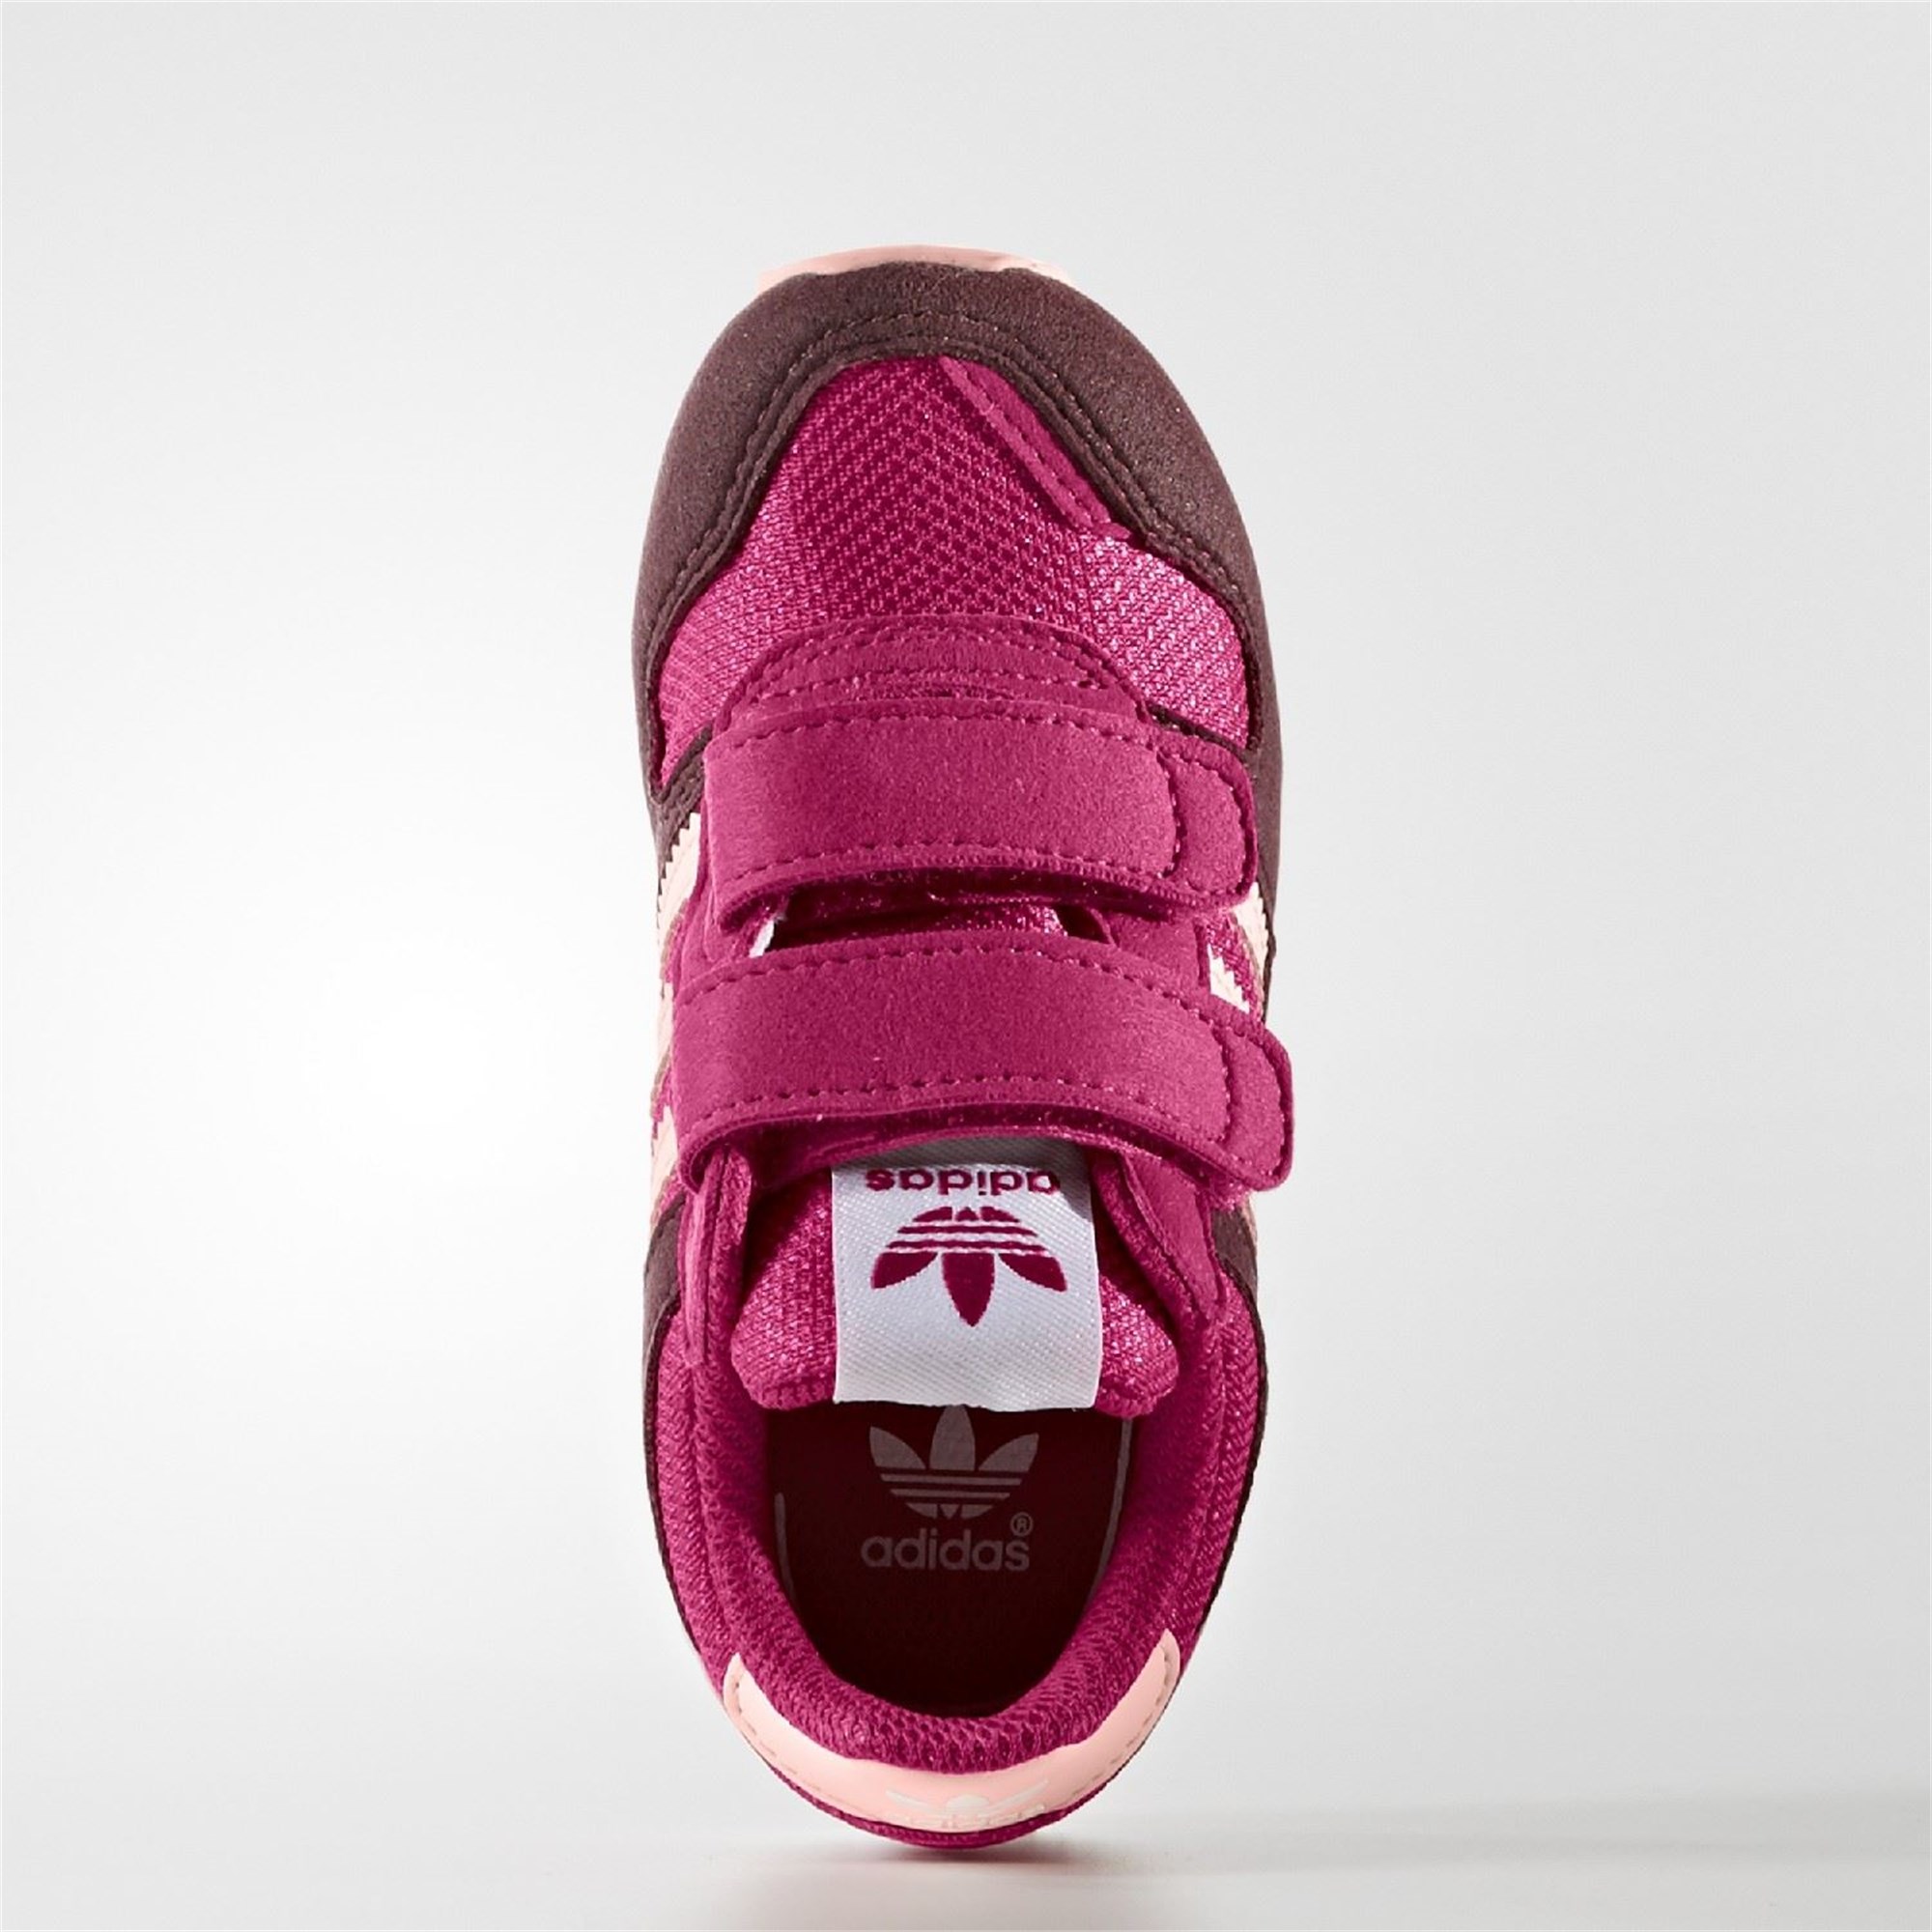 adidas Zx 700 Cf I Çocuk Spor Ayakkabı Ürün kodu: BB2449 | Etichet Sport